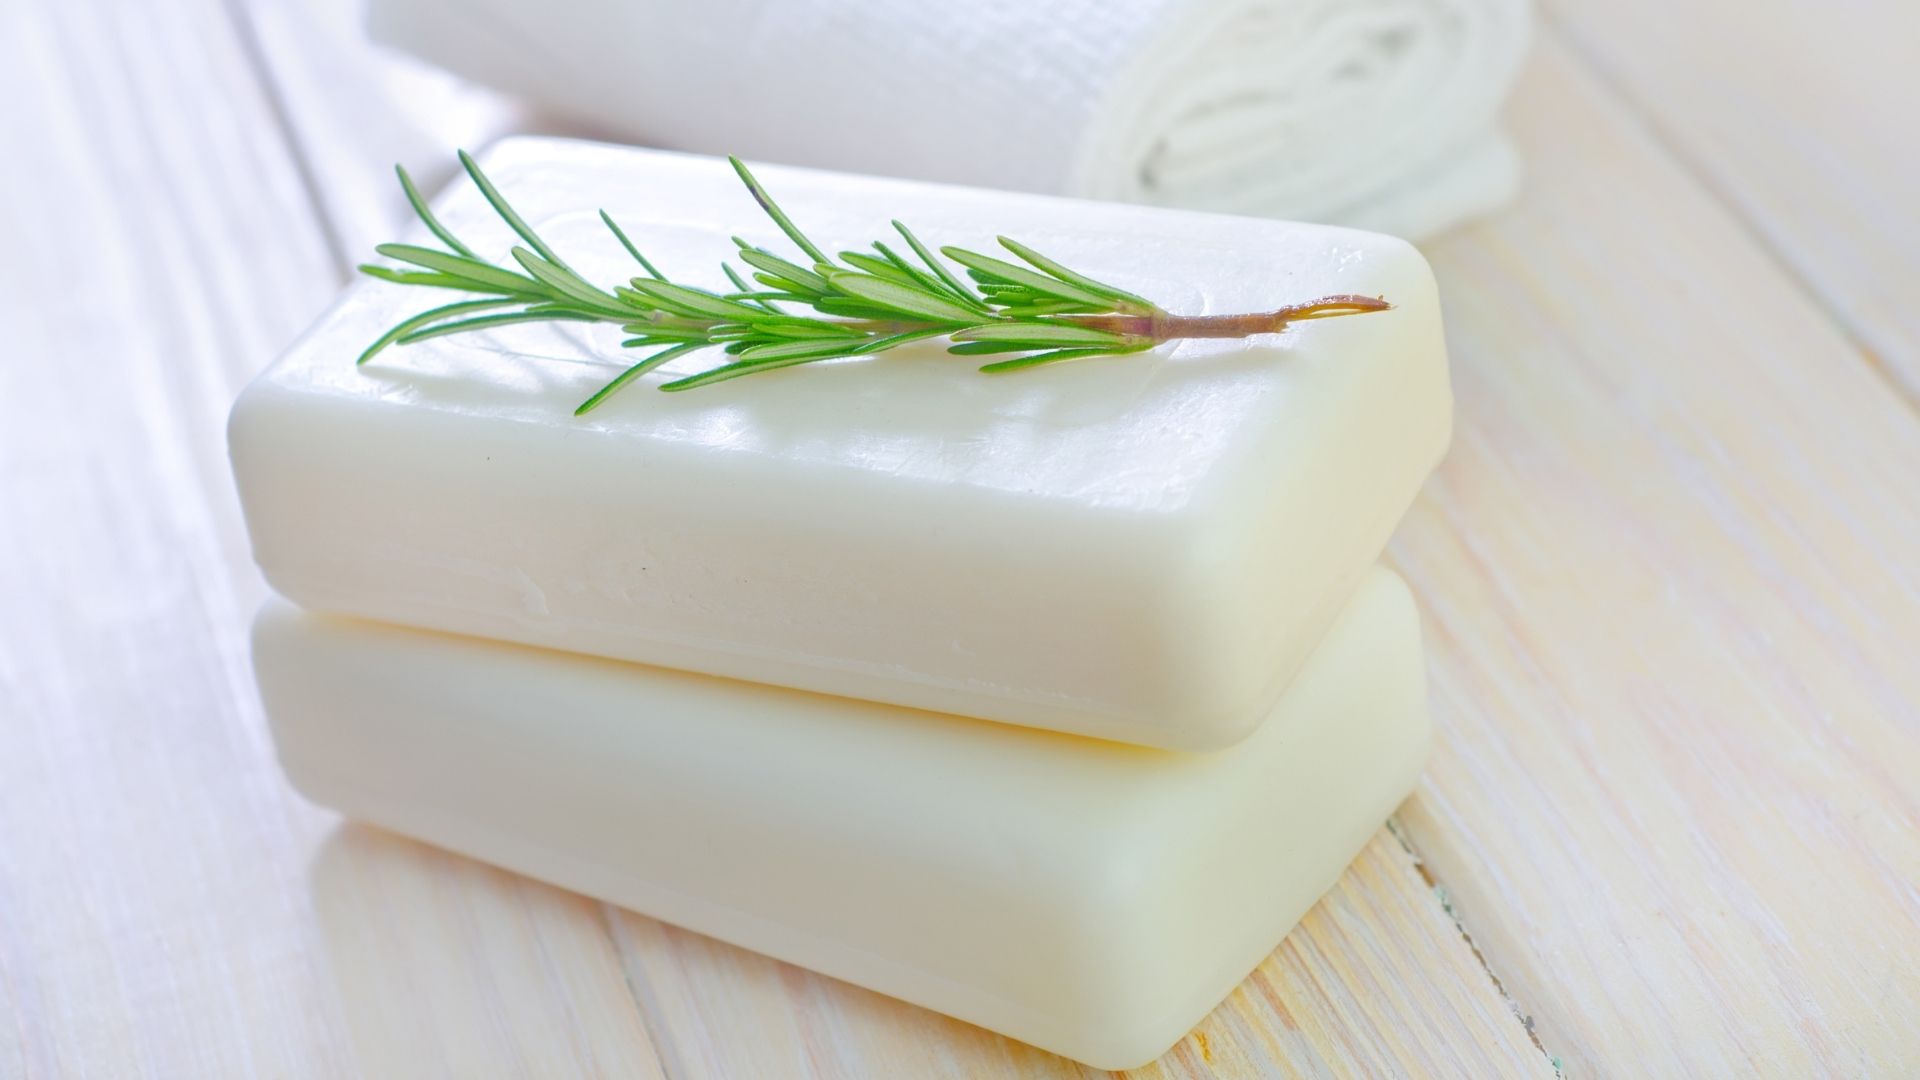 bondillons de savon pour la fabrication de vos savonnettes bio naturelles